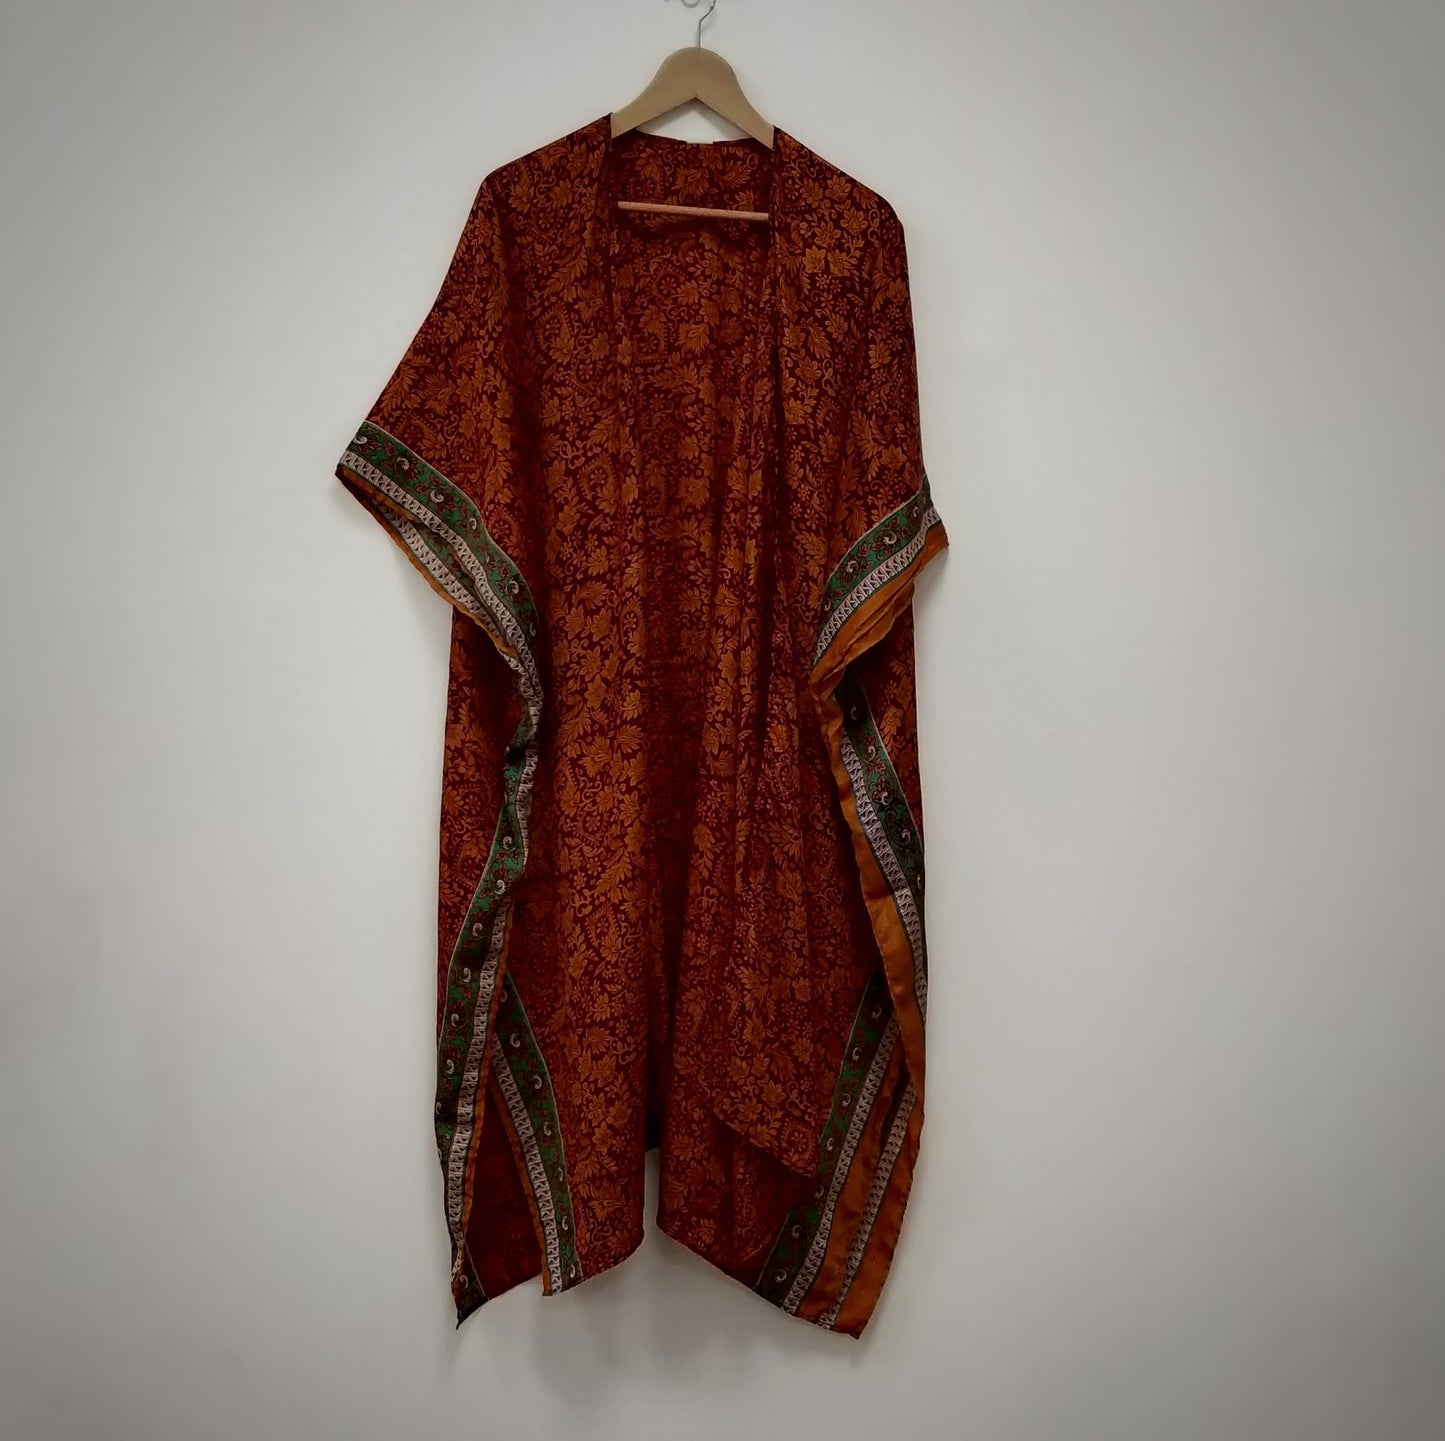 NEW! Upcycled Vintage Sari Kimono Empowering Women in India